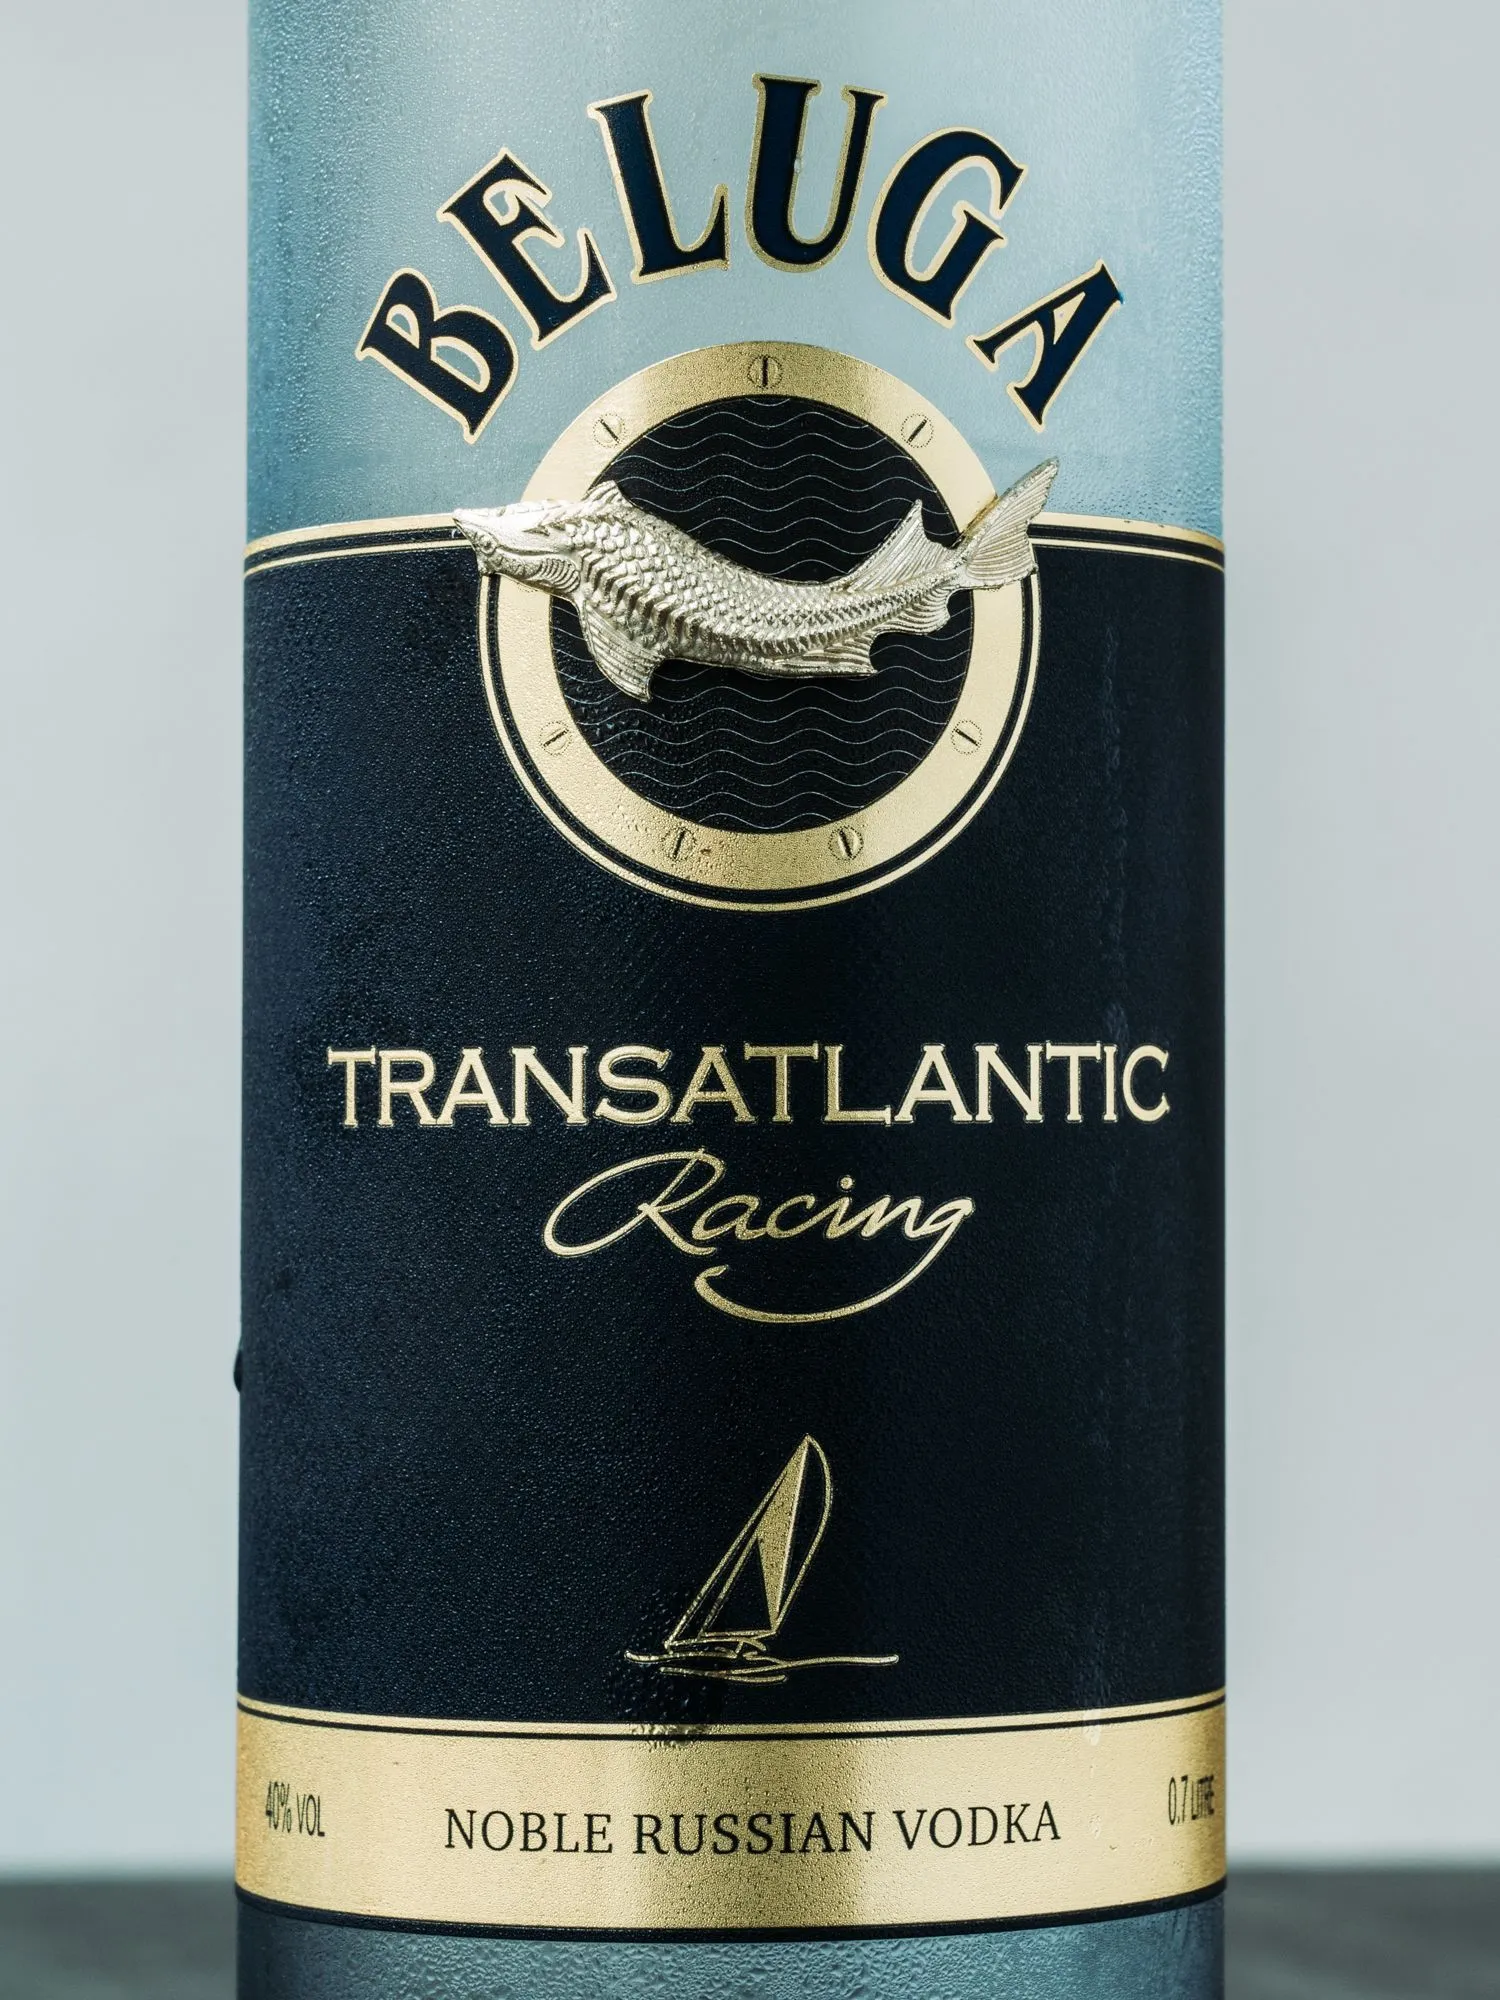 Водка Белуга Трансатлантик Рейсинг / Beluga Transatlantic Racing